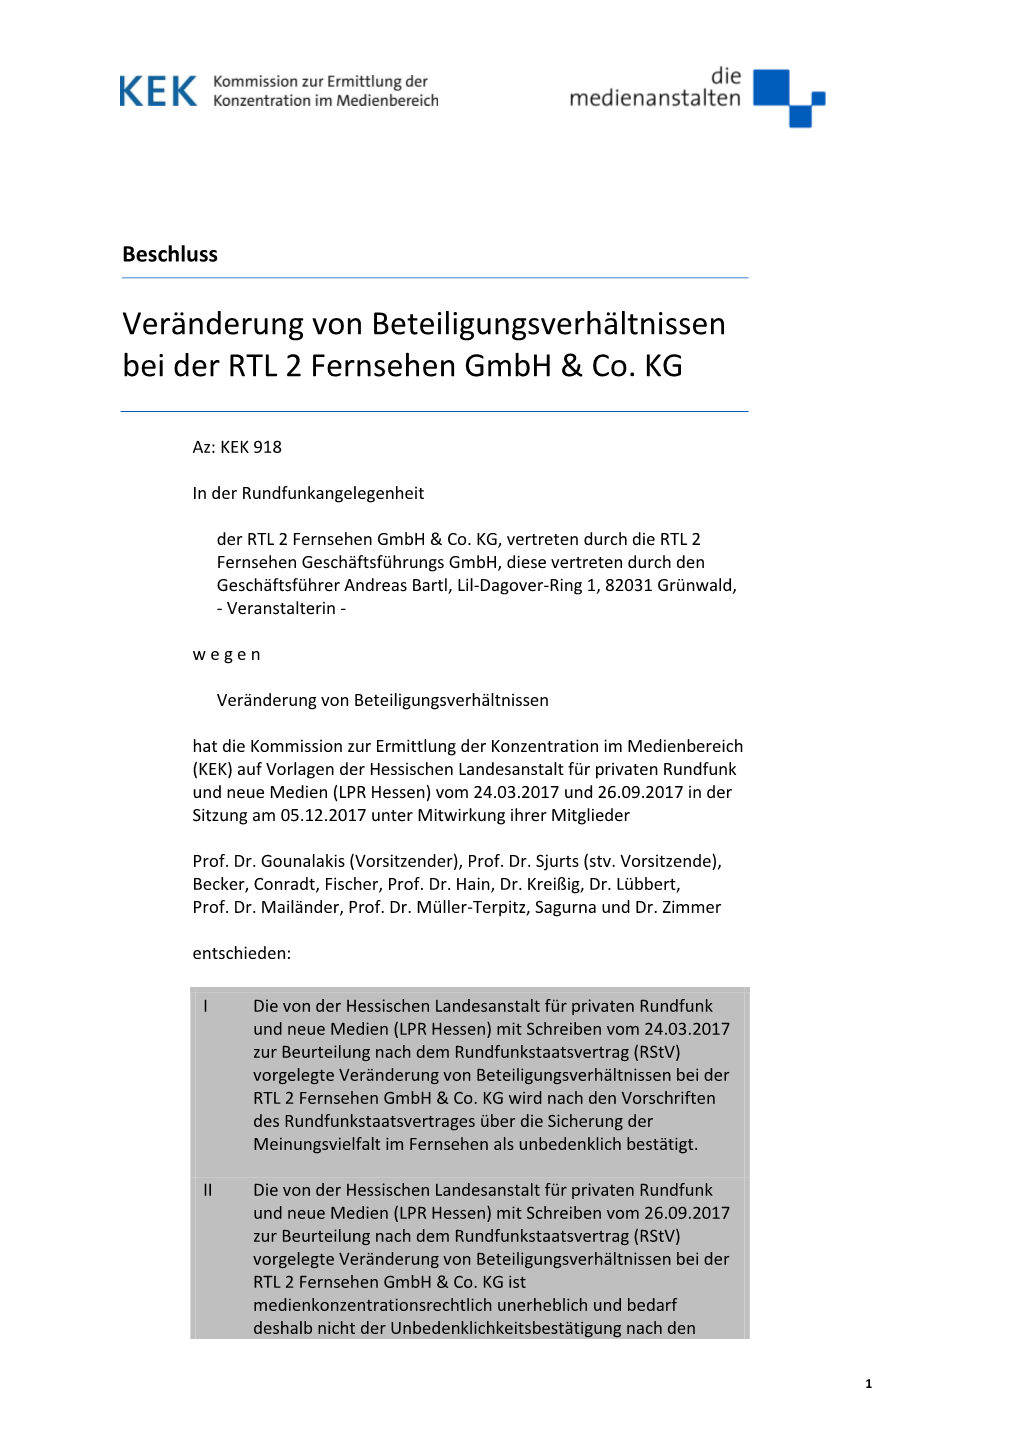 Veränderung Von Beteiligungsverhältnissen Bei Der RTL 2 Fernsehen Gmbh & Co